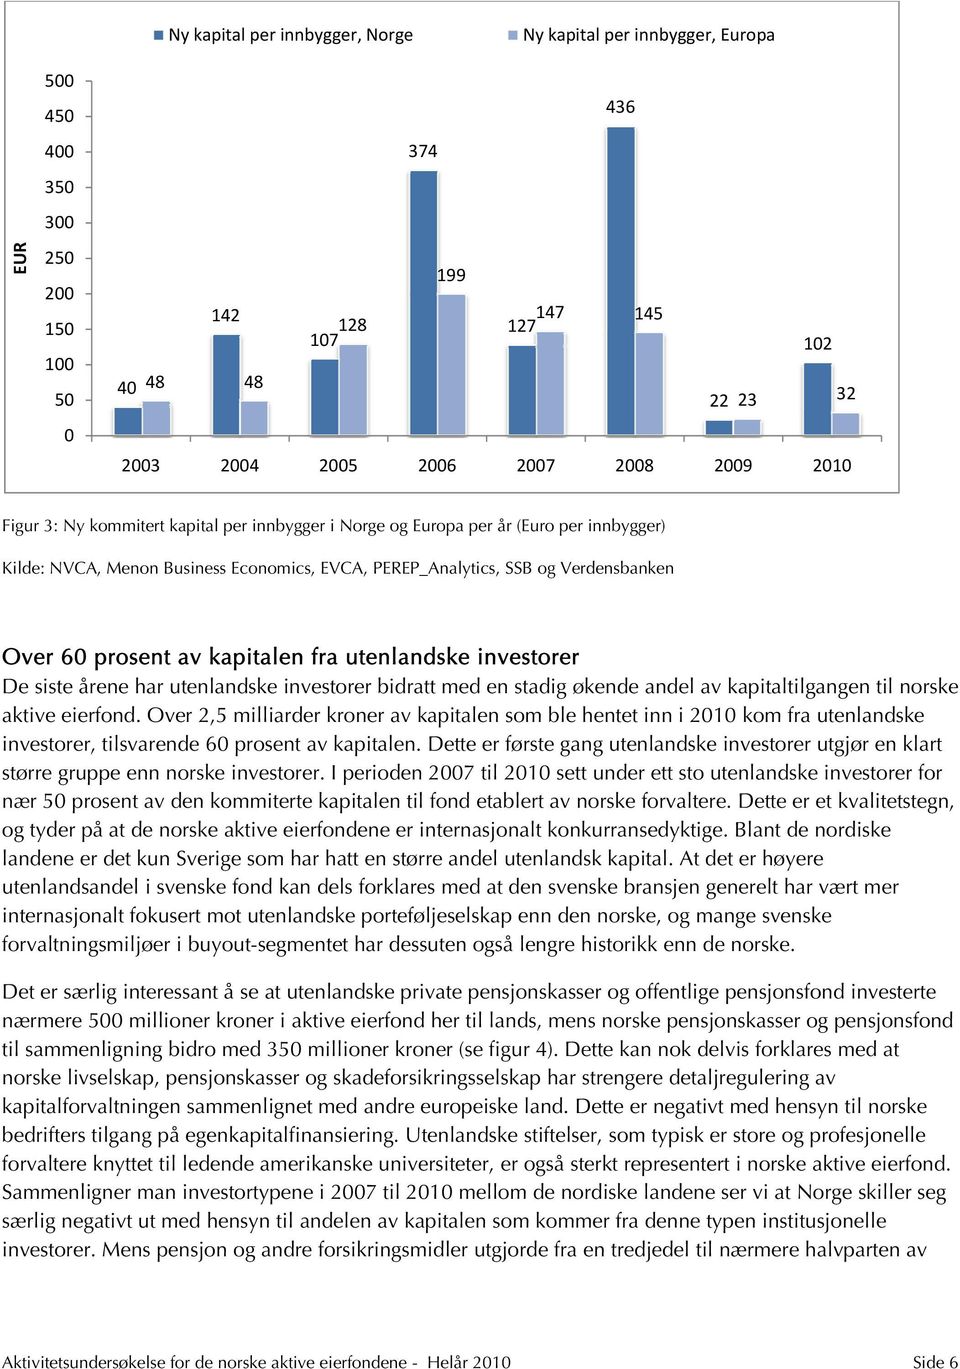 investorer De siste årene har utenlandske investorer bidratt med en stadig økende andel av kapitaltilgangen til norske aktive eierfond.